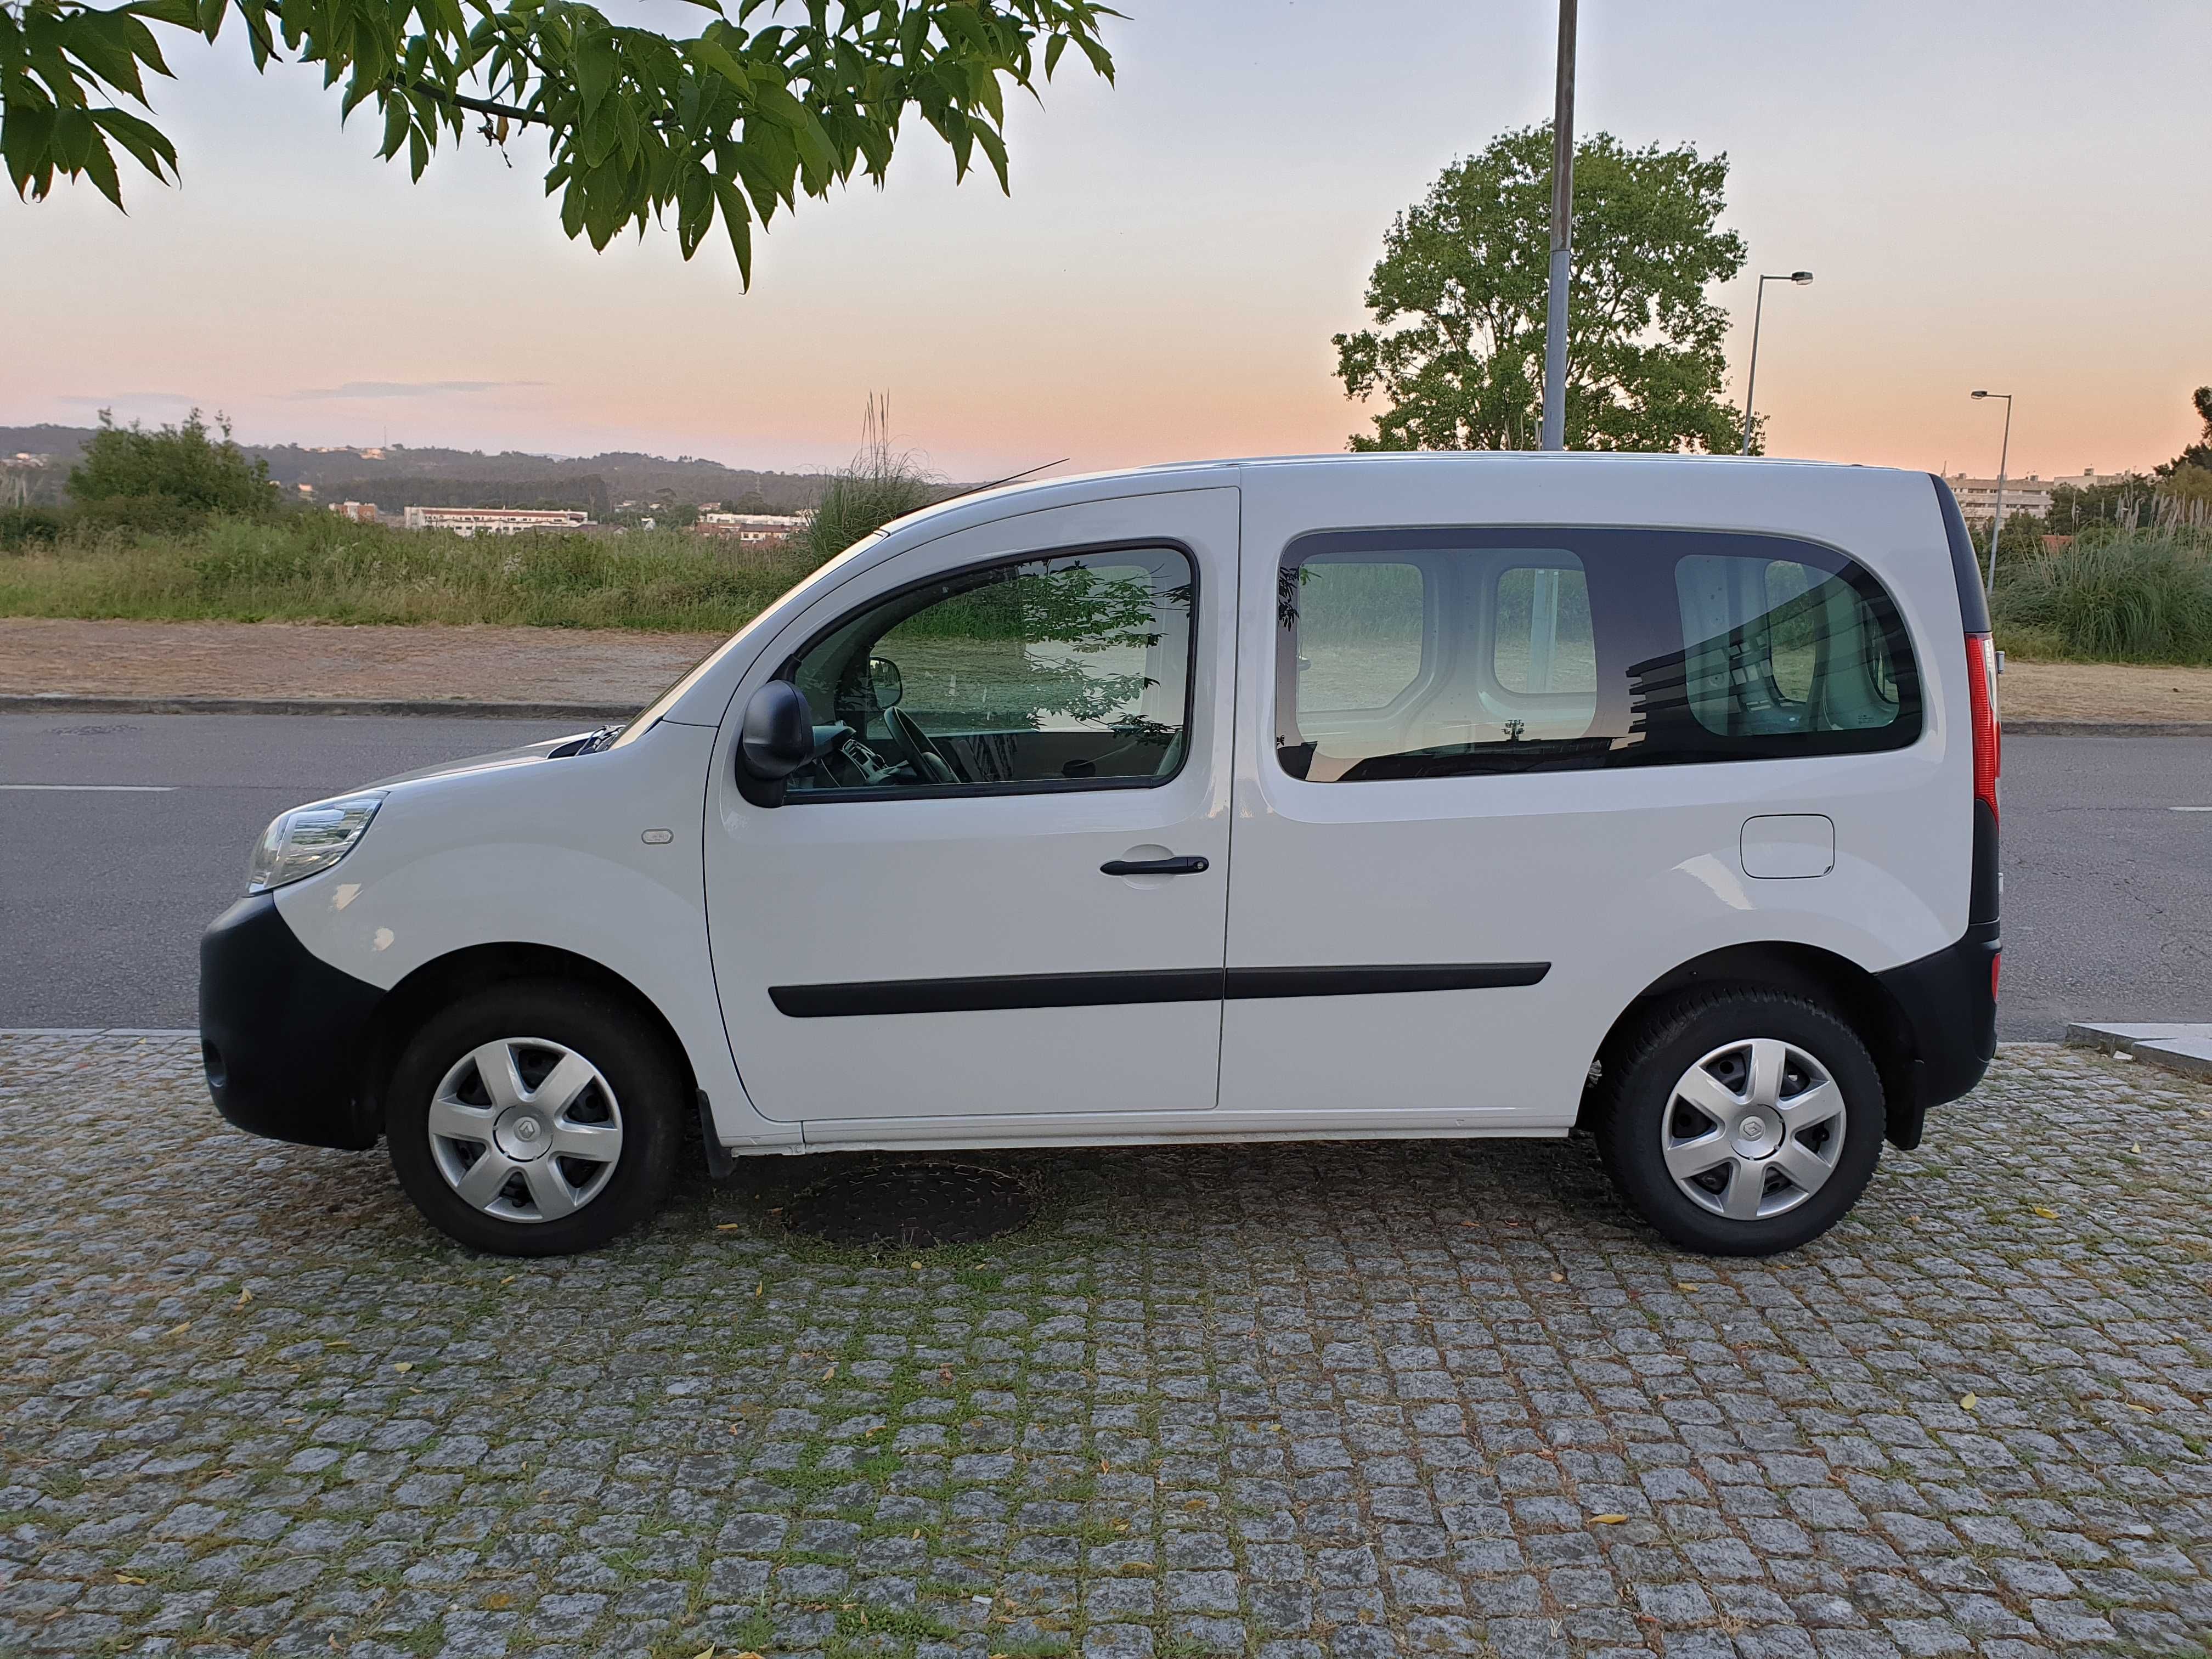 Renault Kangoo 78mil kms NOVA